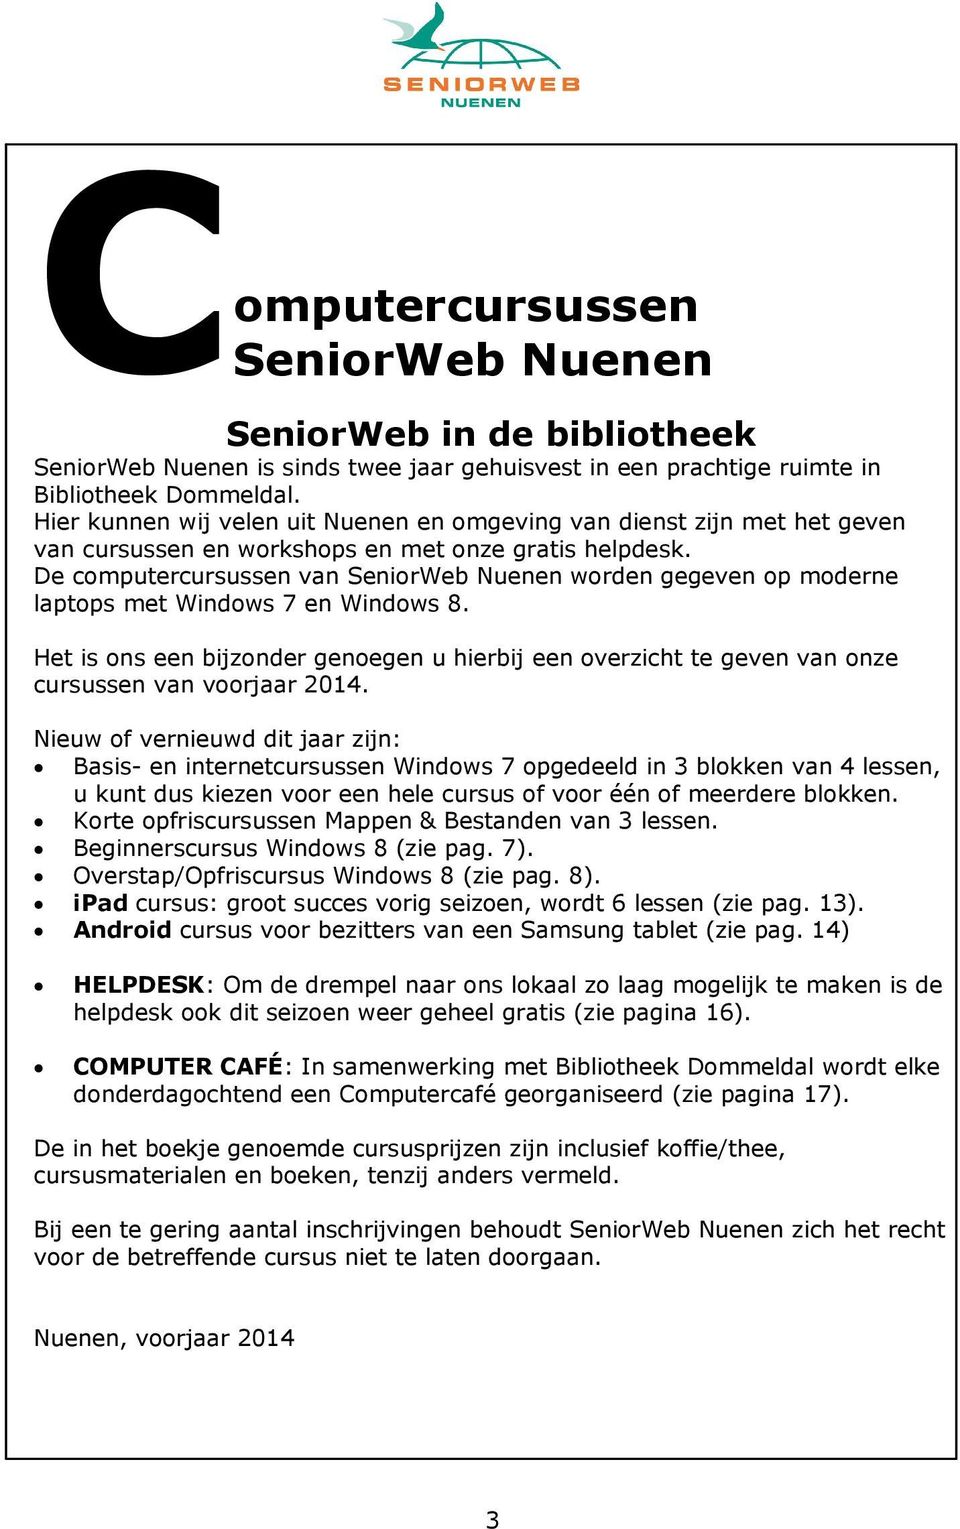 De computercursussen van SeniorWeb Nuenen worden gegeven op moderne laptops met Windows 7 en Windows 8.